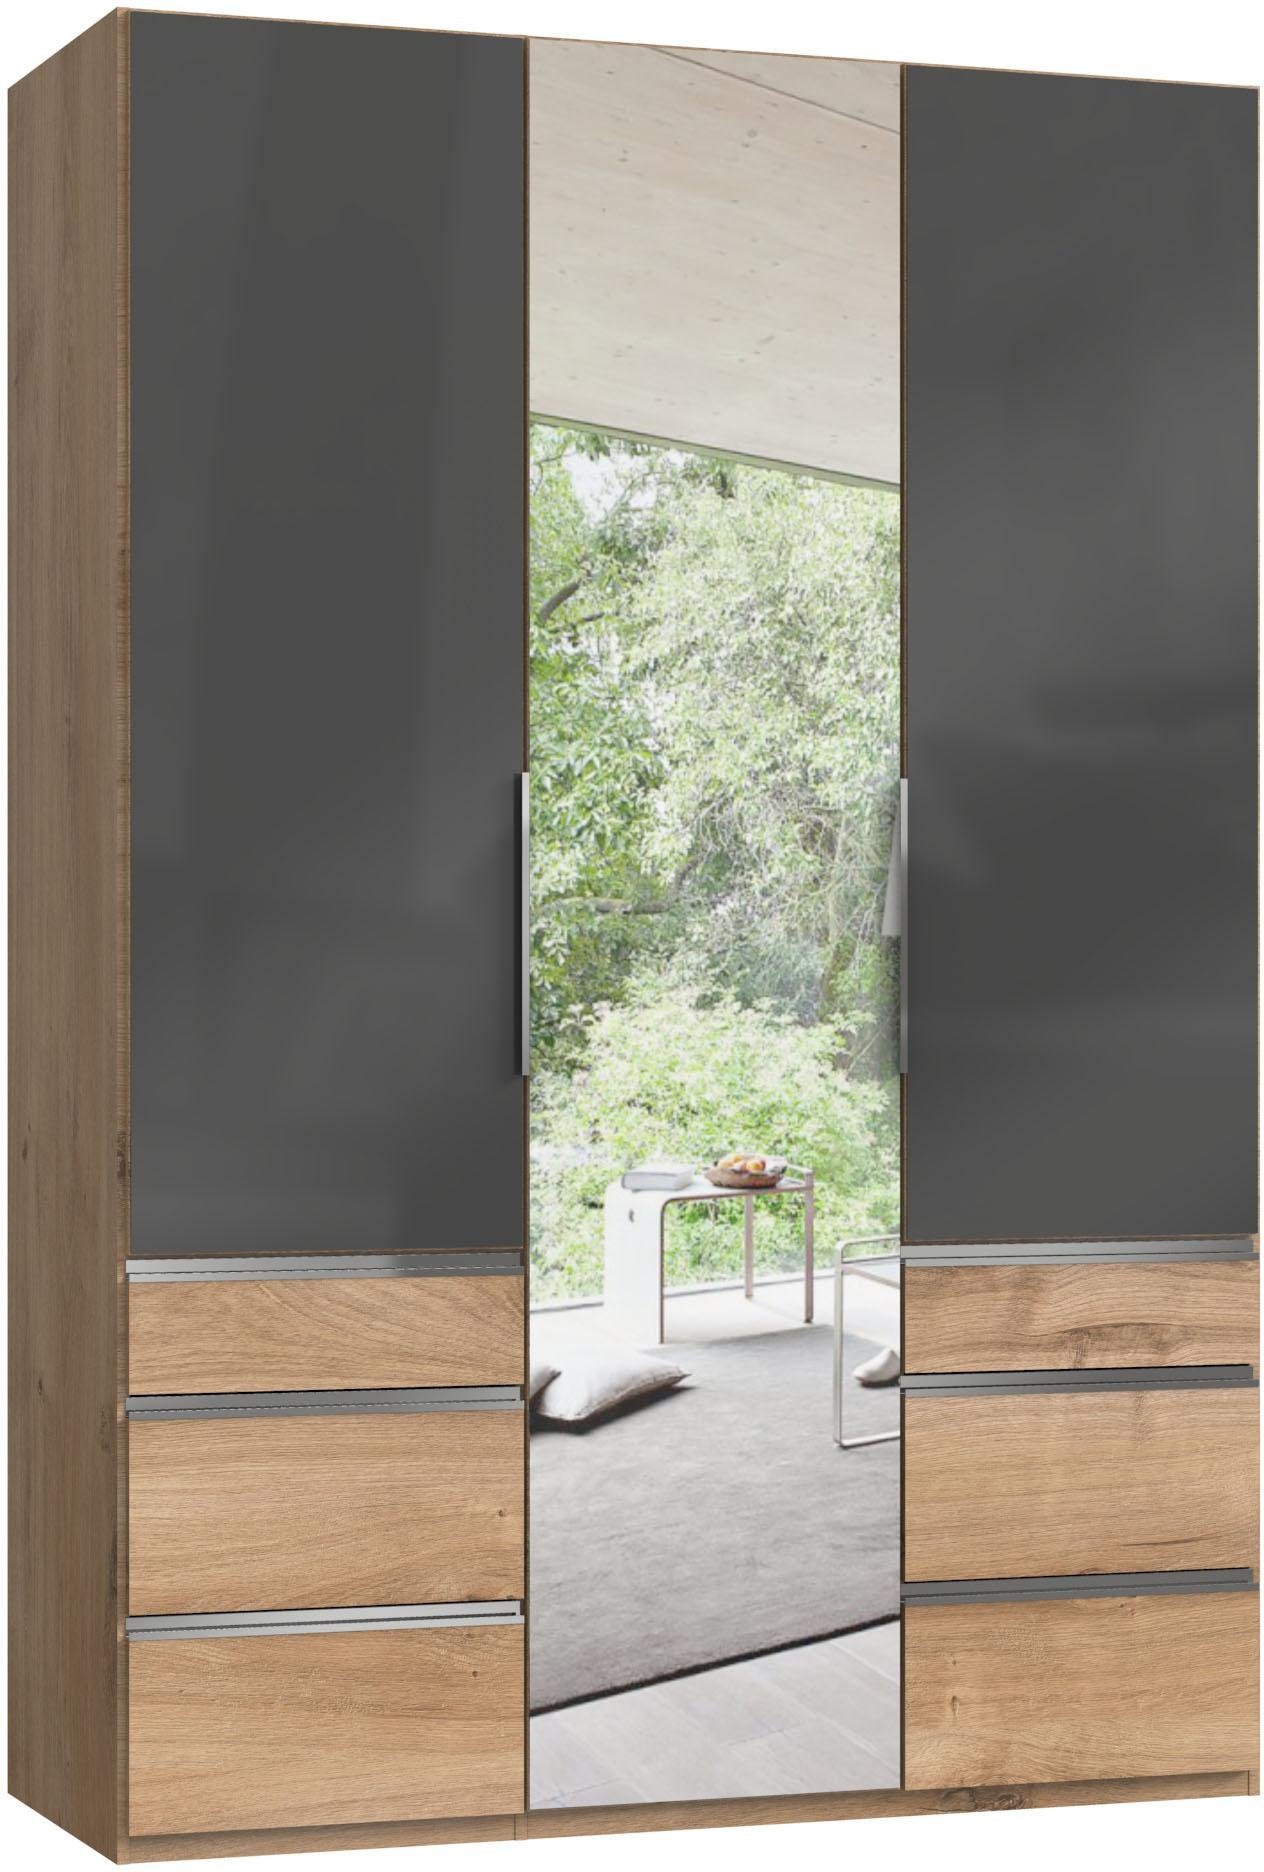 Go To plankeneichefarben/Grauglas Fresh Spiegeltüren Level mit Glas-und Kleiderschrank